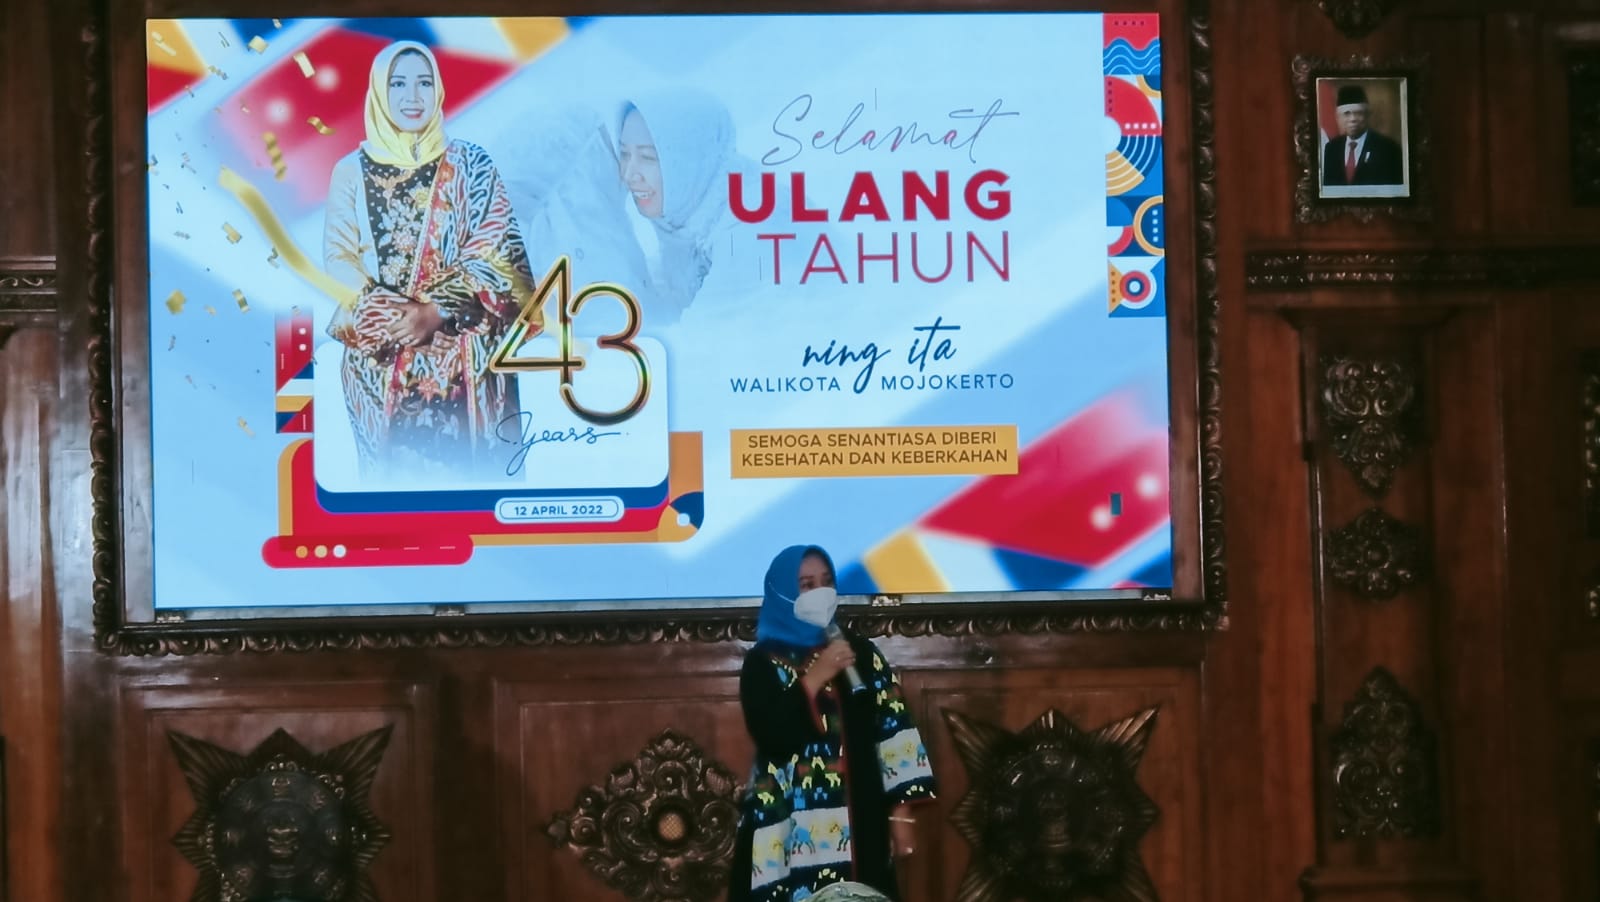 Rayakan Ulang Tahun saat Ramadhan, Wali Kota Ning Ita Gelar Syukuran Sederhana